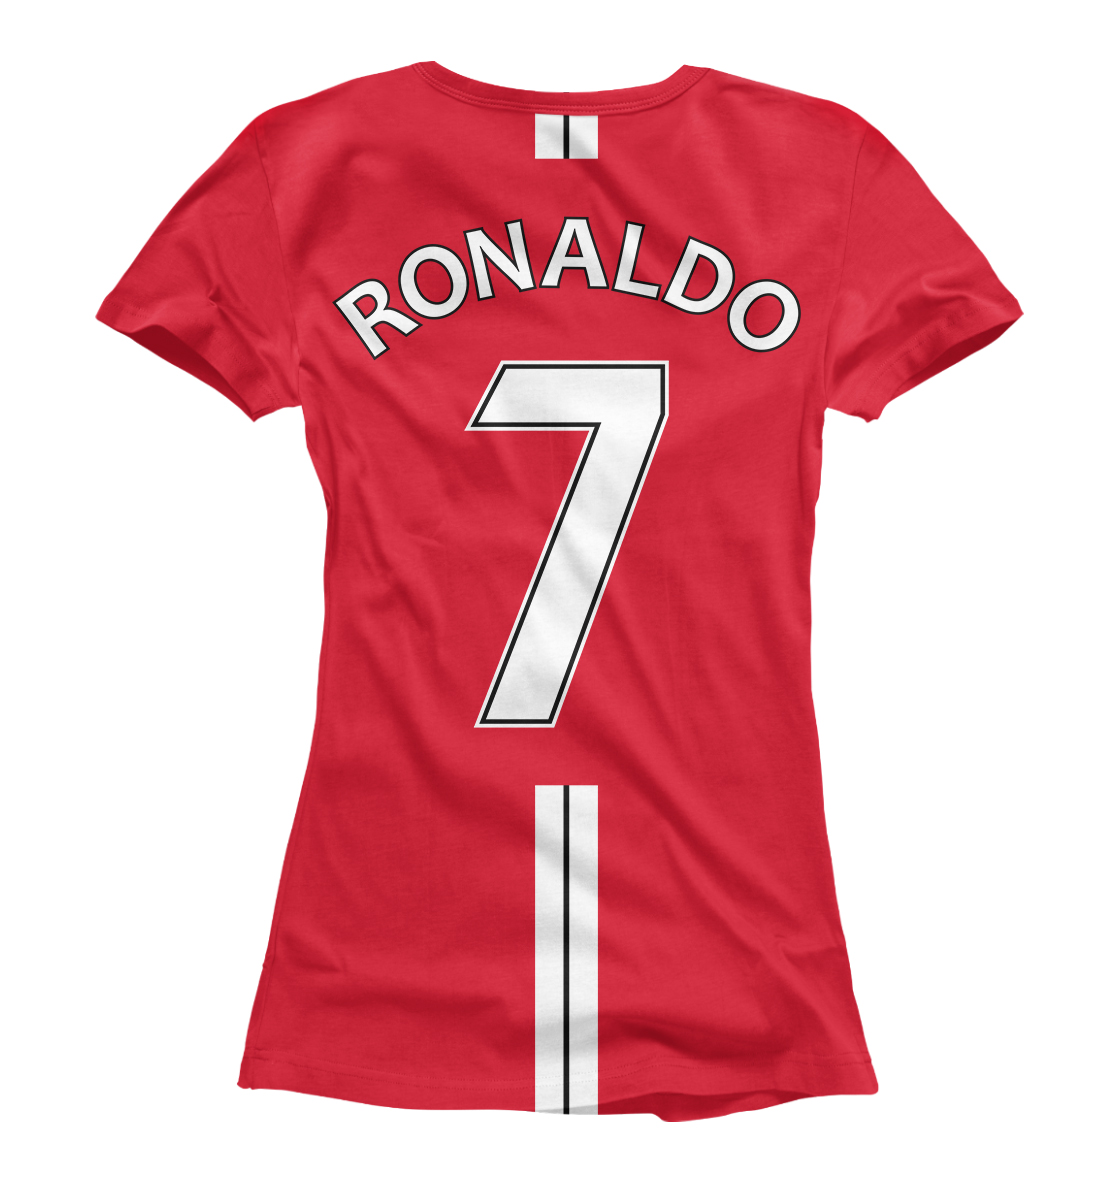 Женская Футболка Ronaldo, артикул FLT-766881-fut-1mp - фото 2